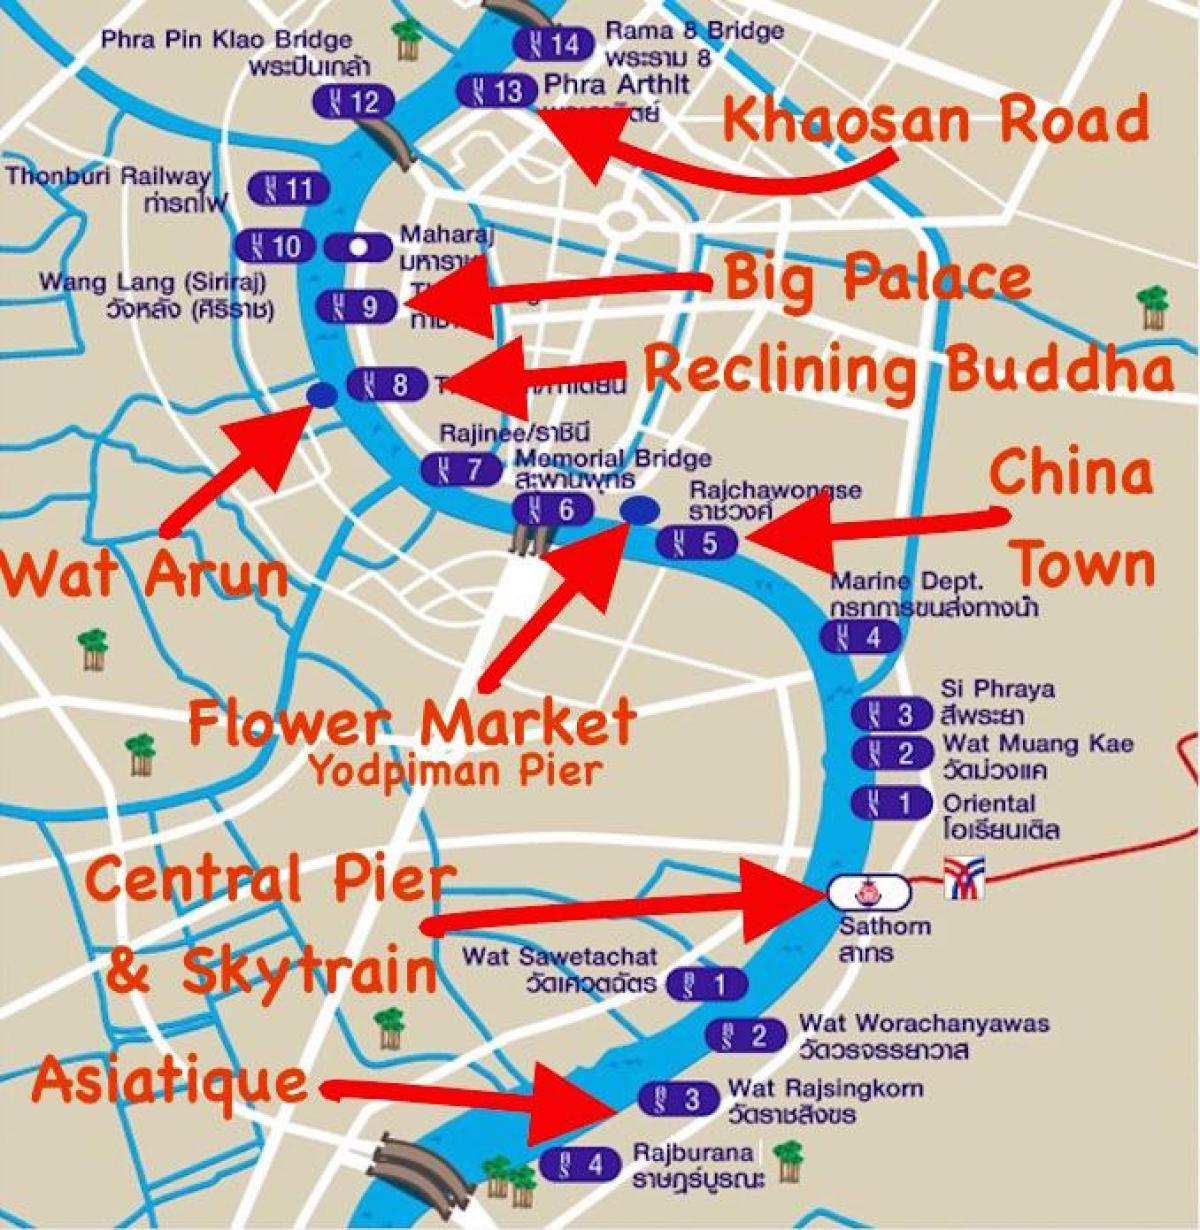 mapa de bangkok moll